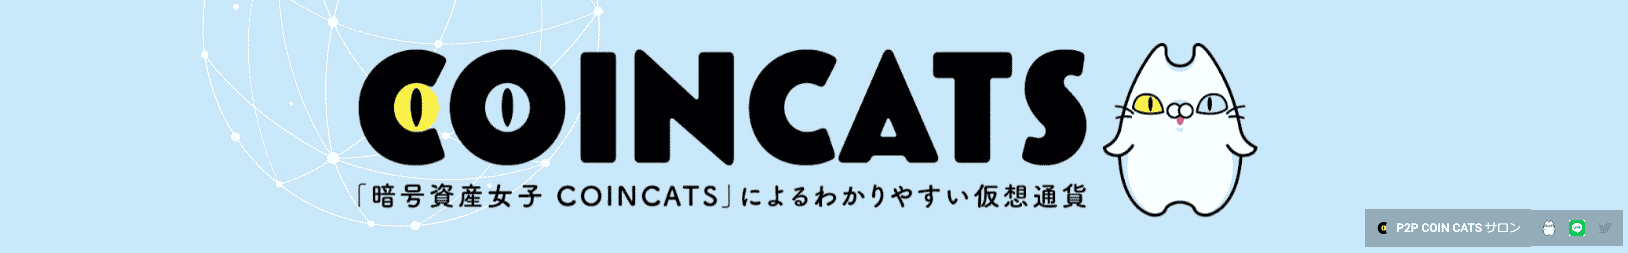 COIN CATSチャンネル